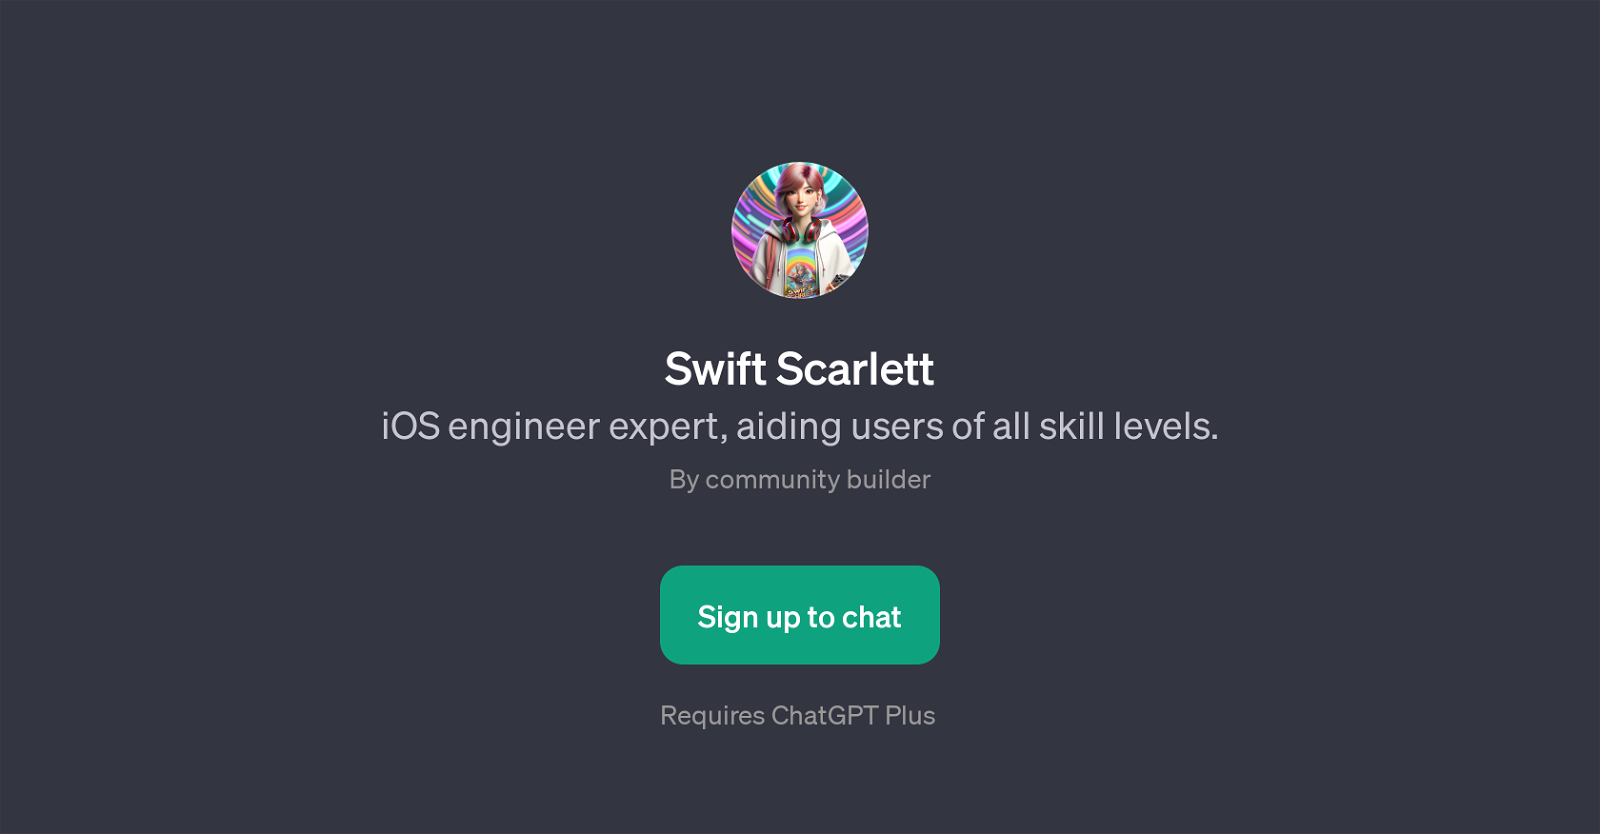 Swift Scarlett website